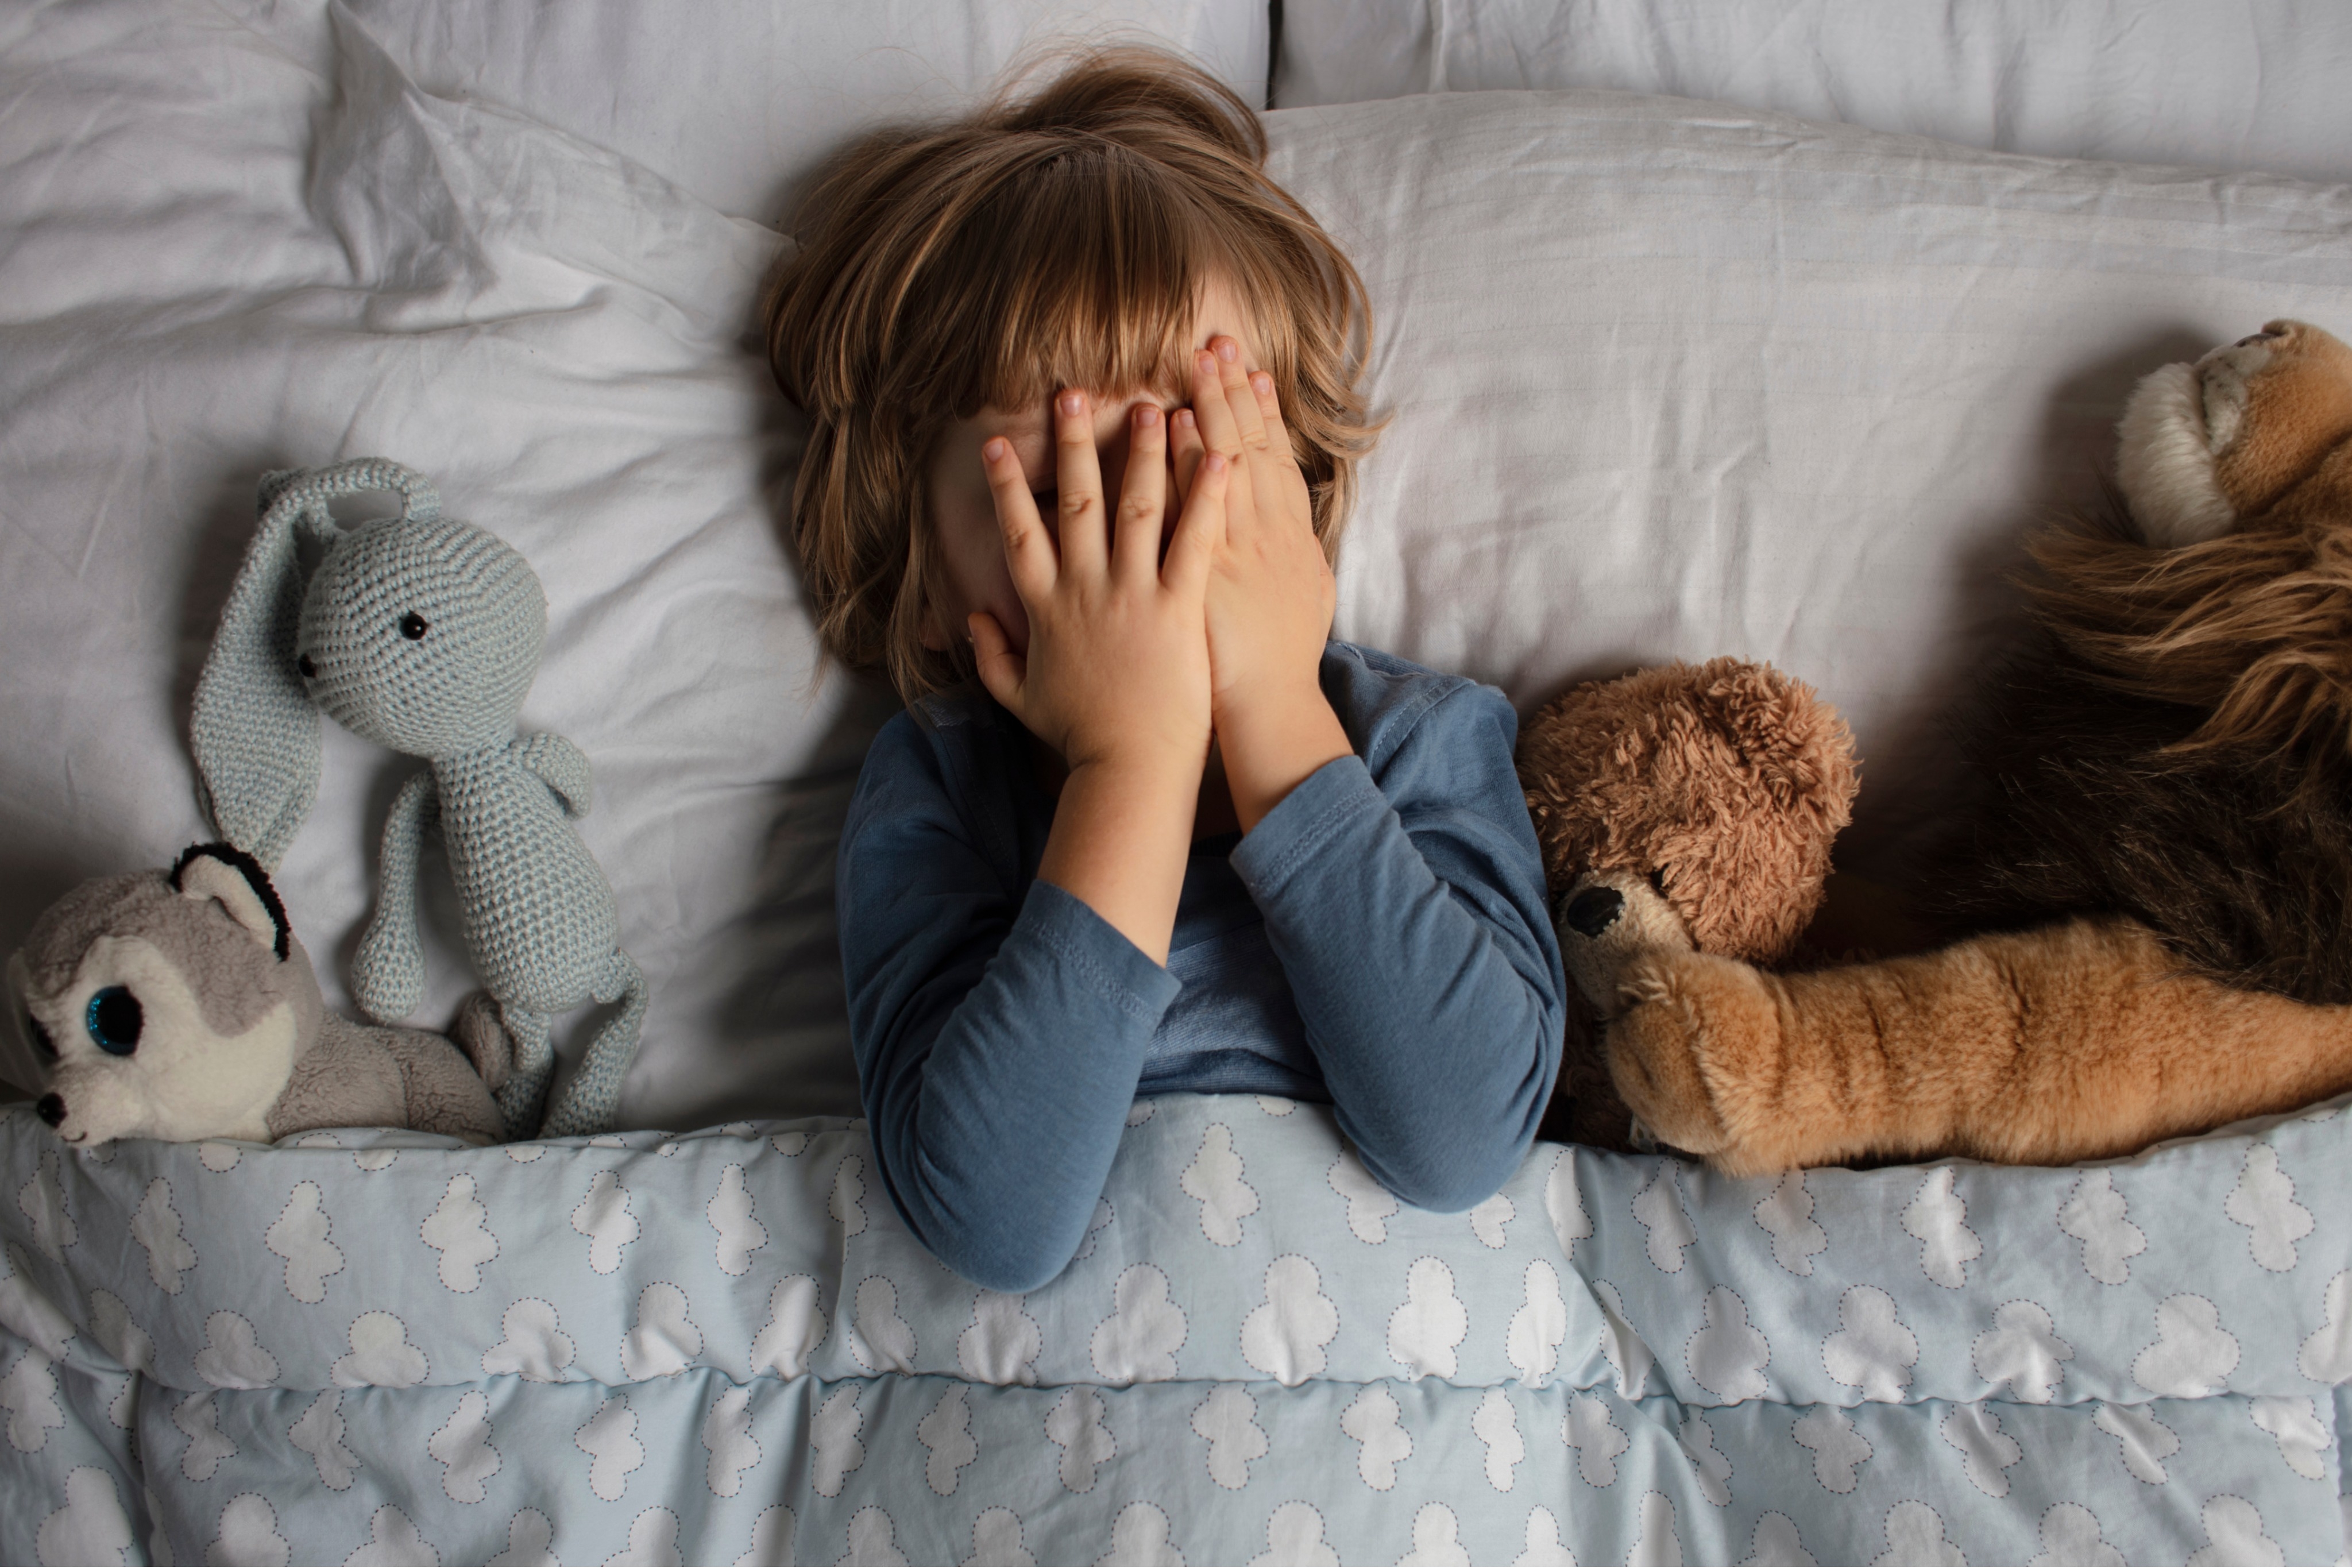 
La hora de acostarse para los niños en edad preescolar: Cómo evitar las batallas a la hora de dormir 